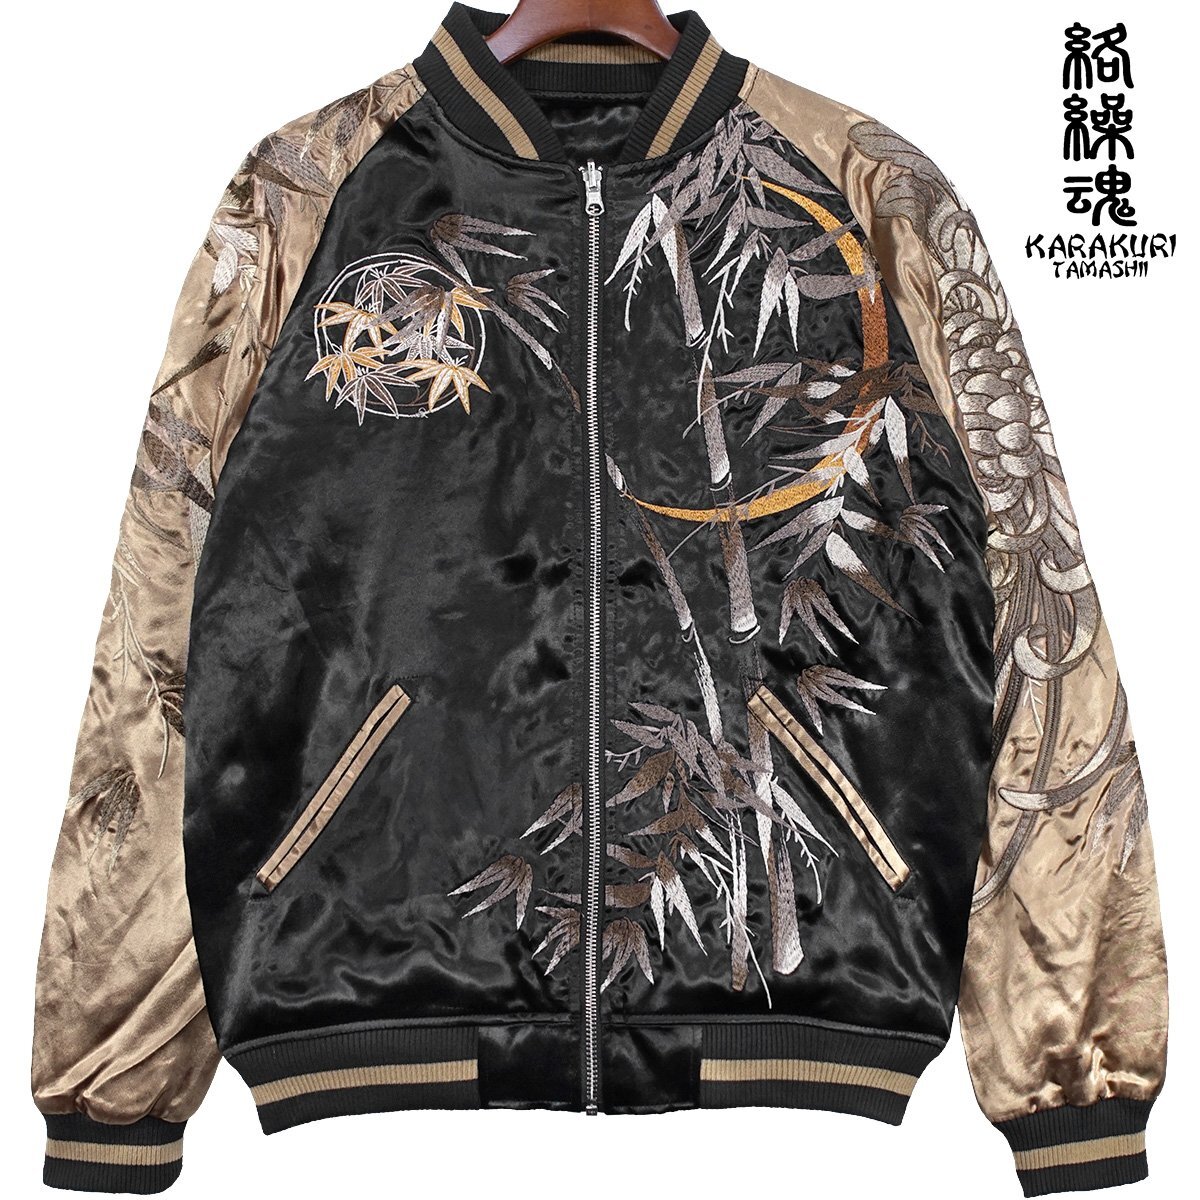 242055-20.. душа . Japanese sovenir jacket .... мир рисунок двусторонний вышивка полный Zip атлас глянец блузон мужской ( Gold золотой черный чёрный ) M.